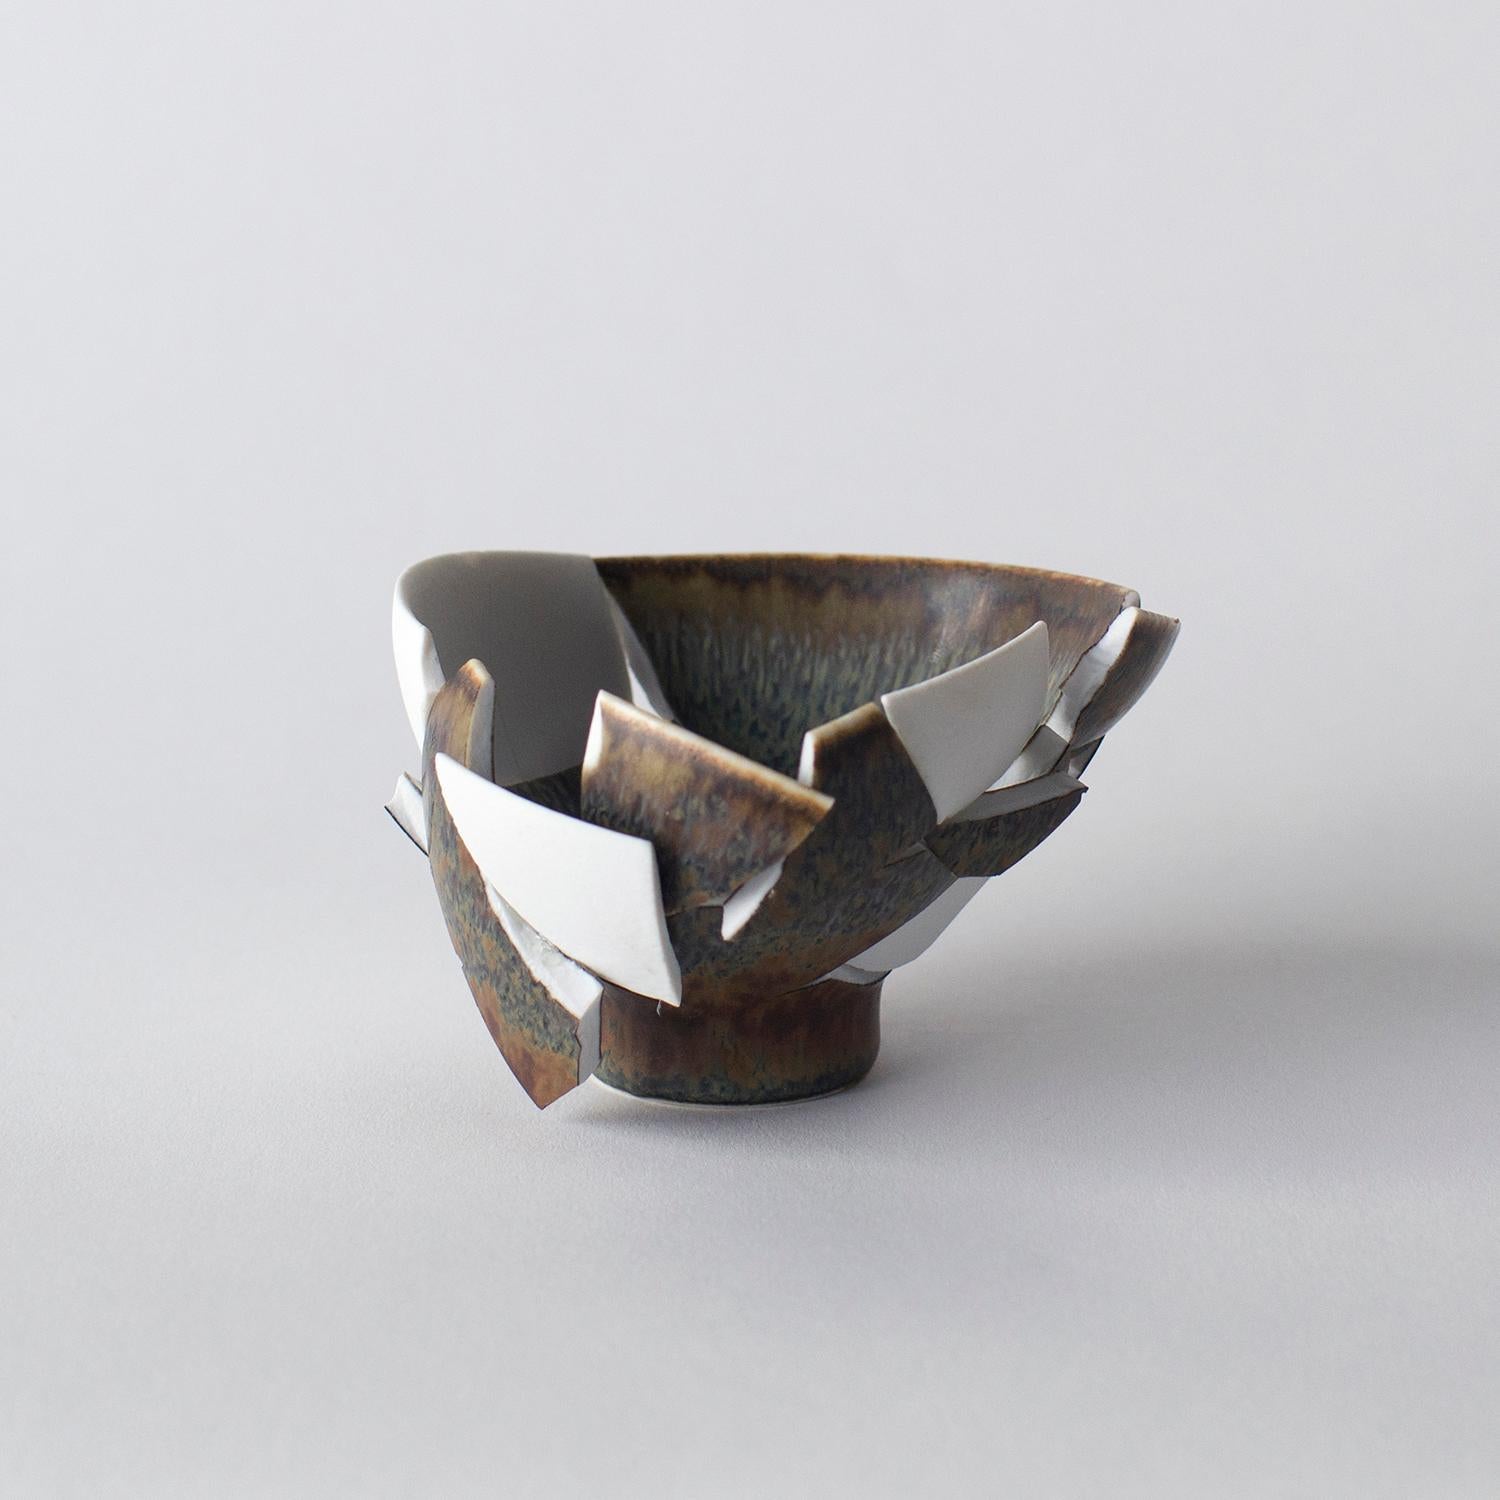 Diese Serie besteht aus einigen Glas- und einigen Keramikarbeiten. Diese Werke sind in Form und Aussehen einzigartig. Norihiko Terayama schuf sie aus beschädigten Vasen, Kaffeetassen und so weiter. Er beginnt, das beschädigte Objekt in einige